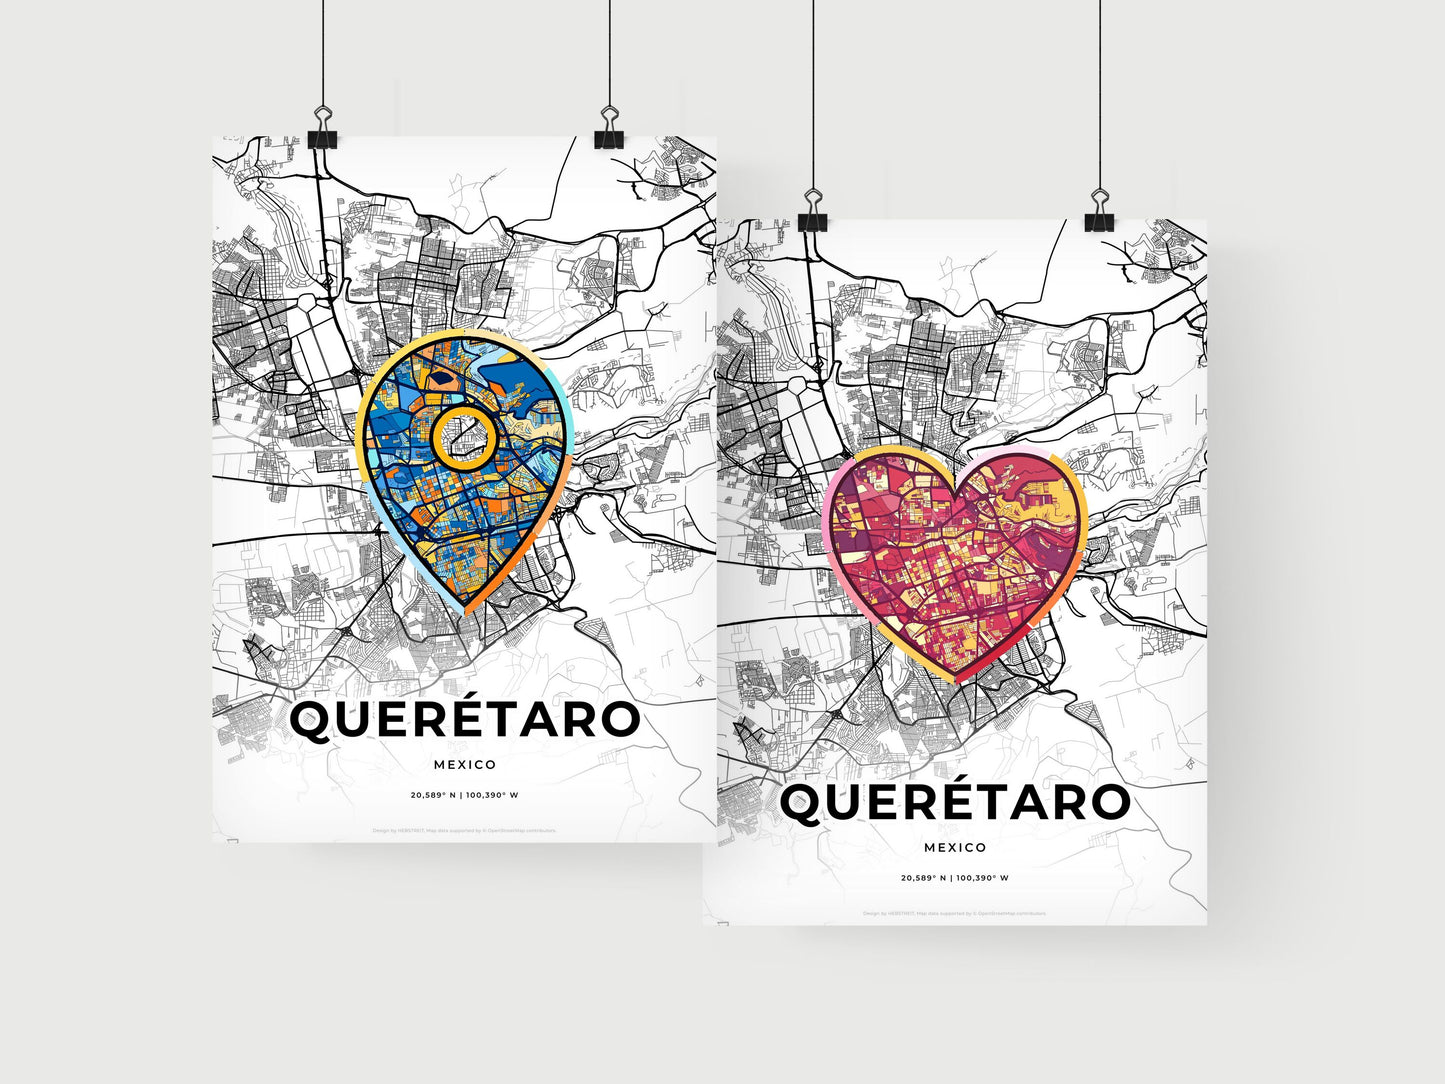 QUERÉTARO MEXICO minimal art map with a colorful icon.